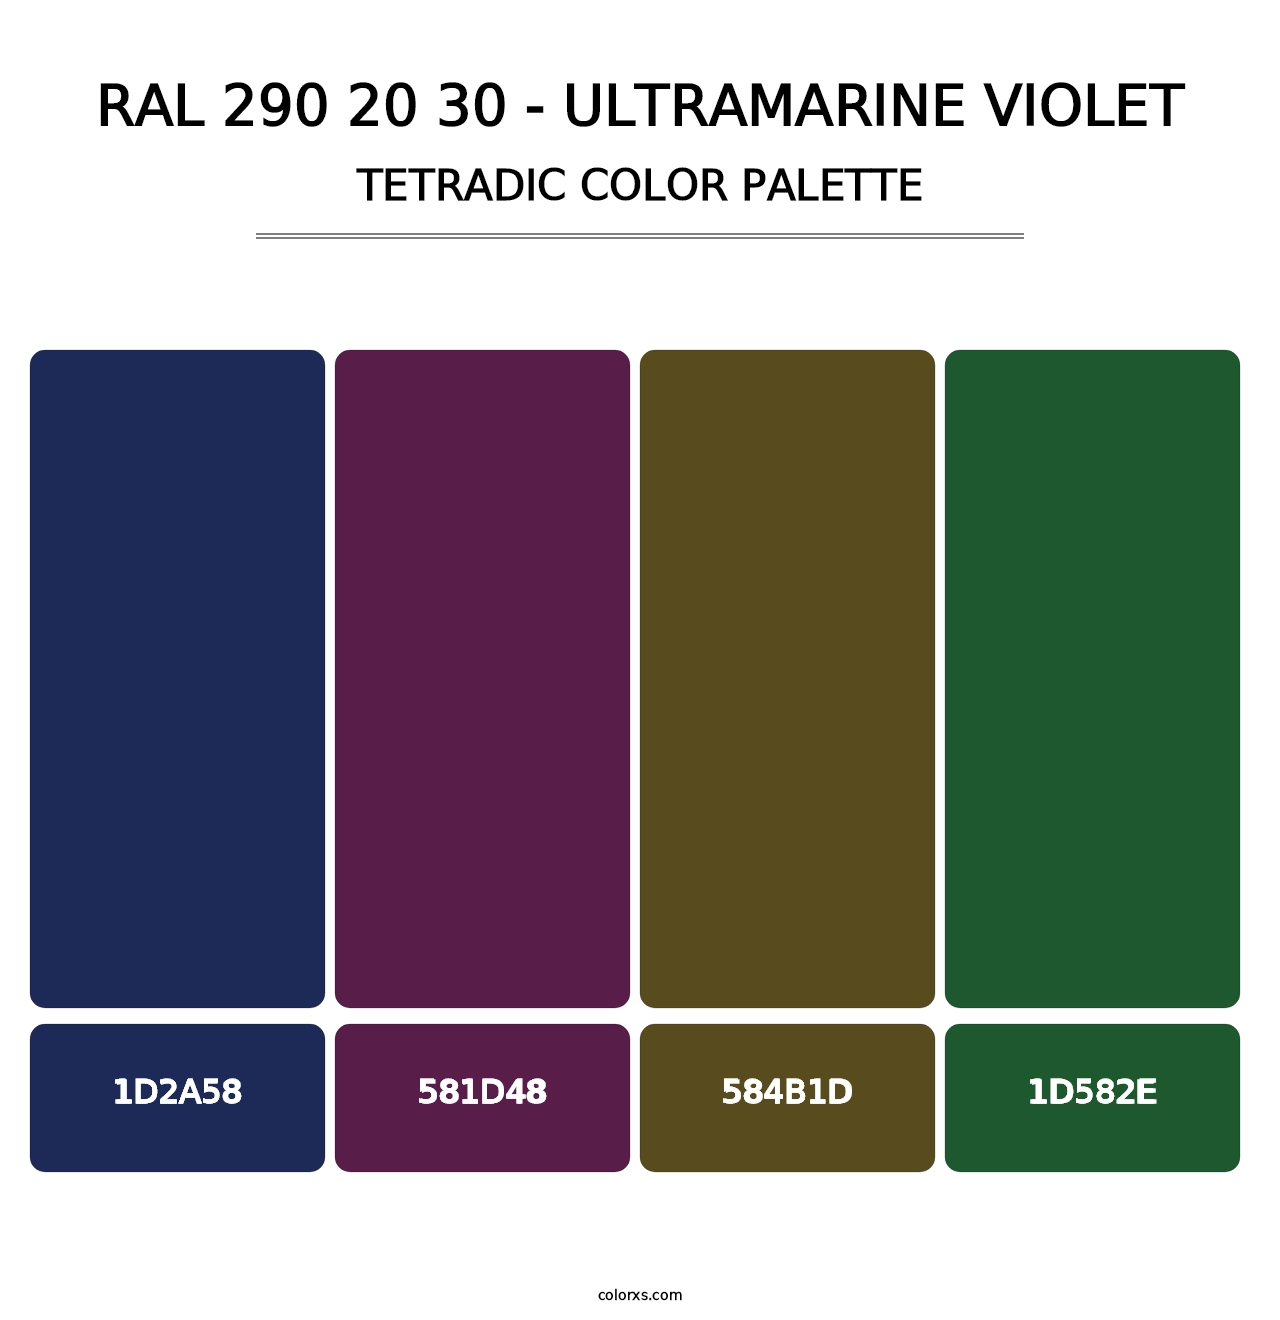 RAL 290 20 30 - Ultramarine Violet - Tetradic Color Palette